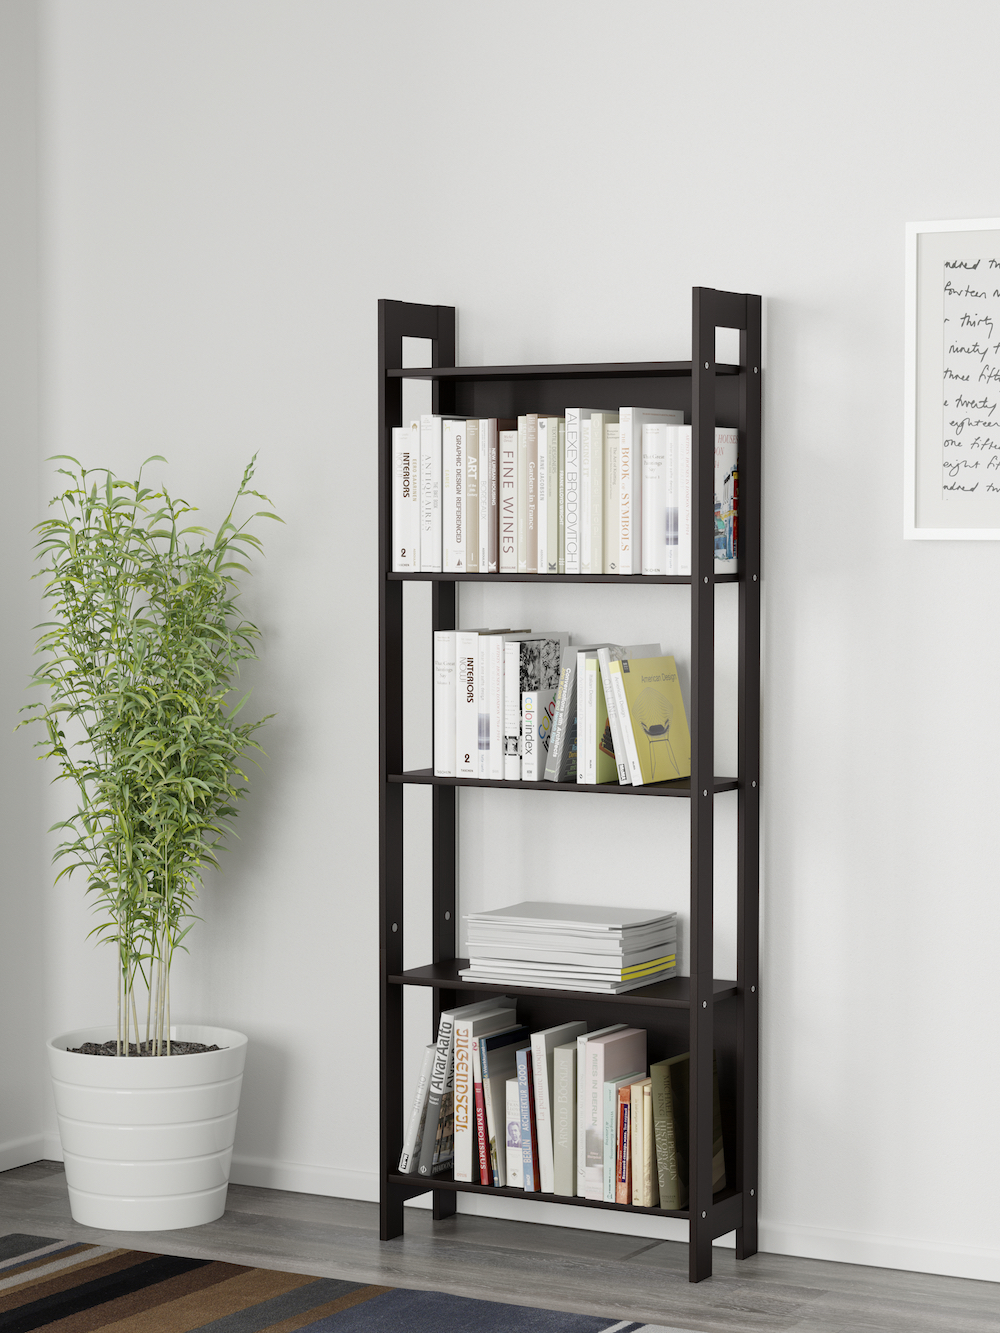 Ikea LAIVA bookcase in black-brown